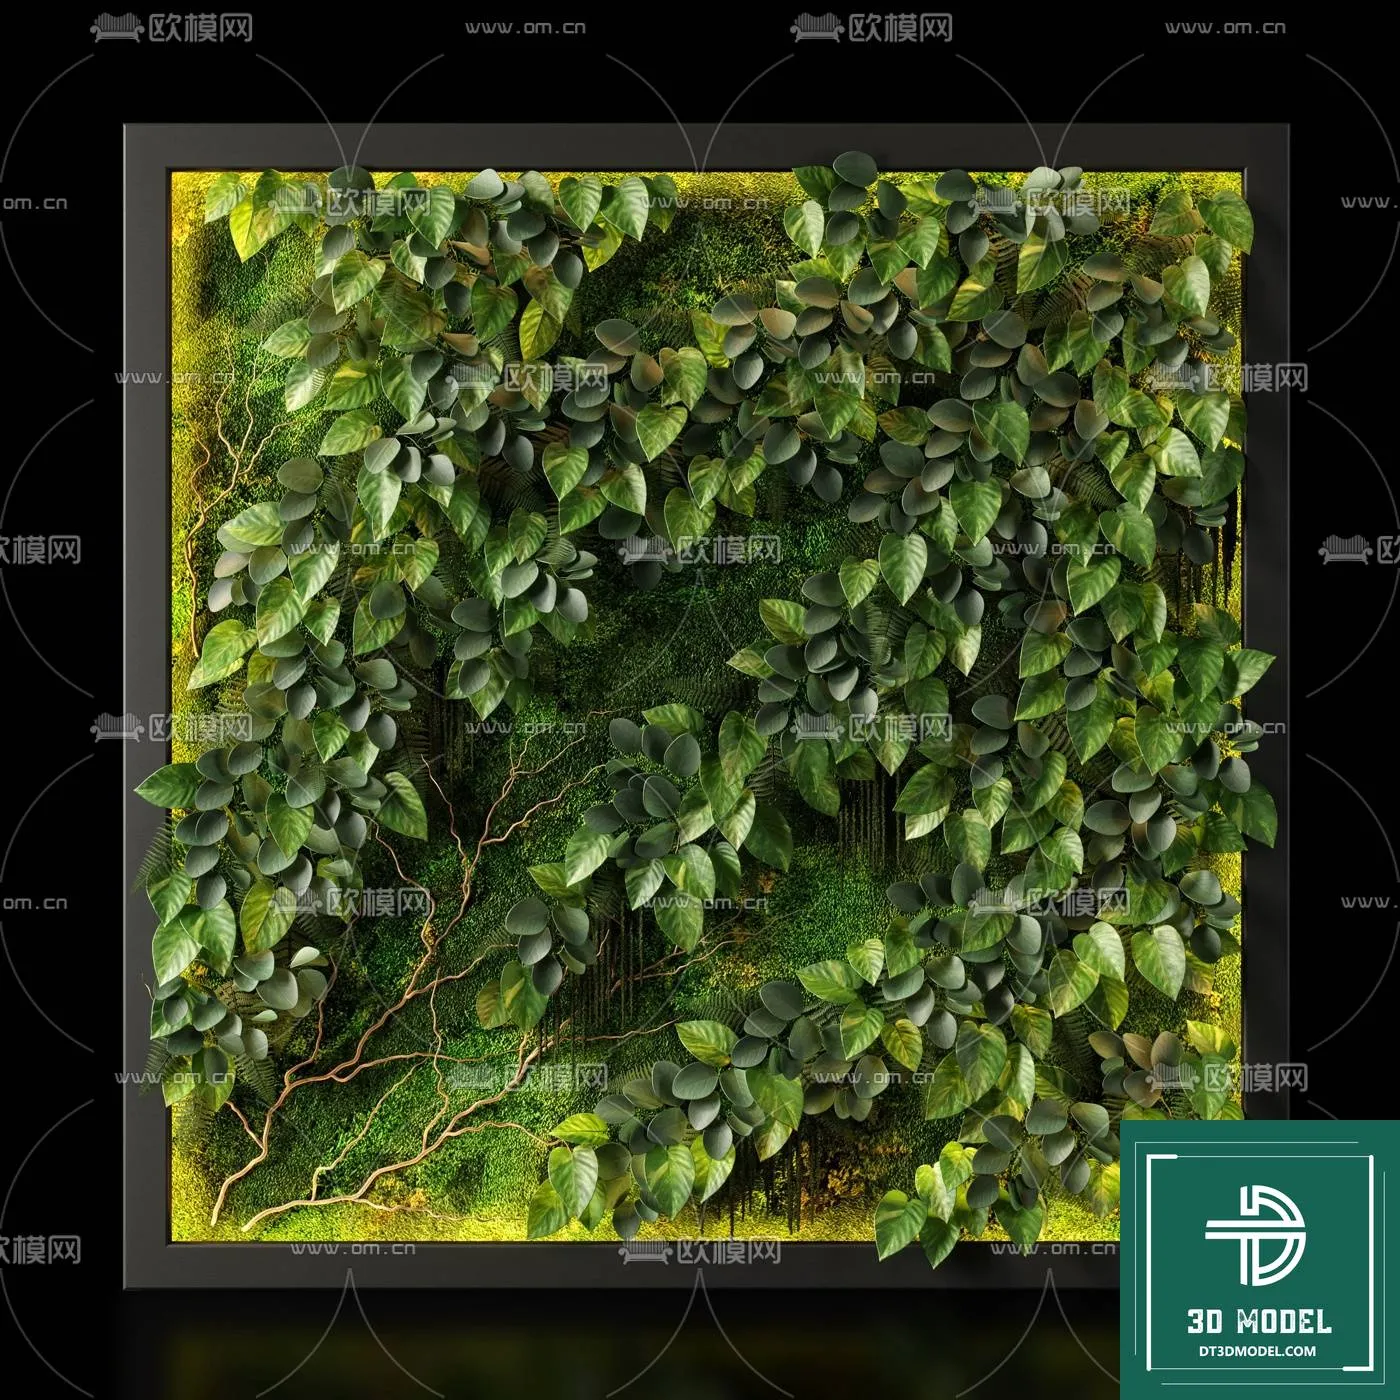 VERTICAL GARDEN – FITOWALL PLANT 3D MODEL – 031